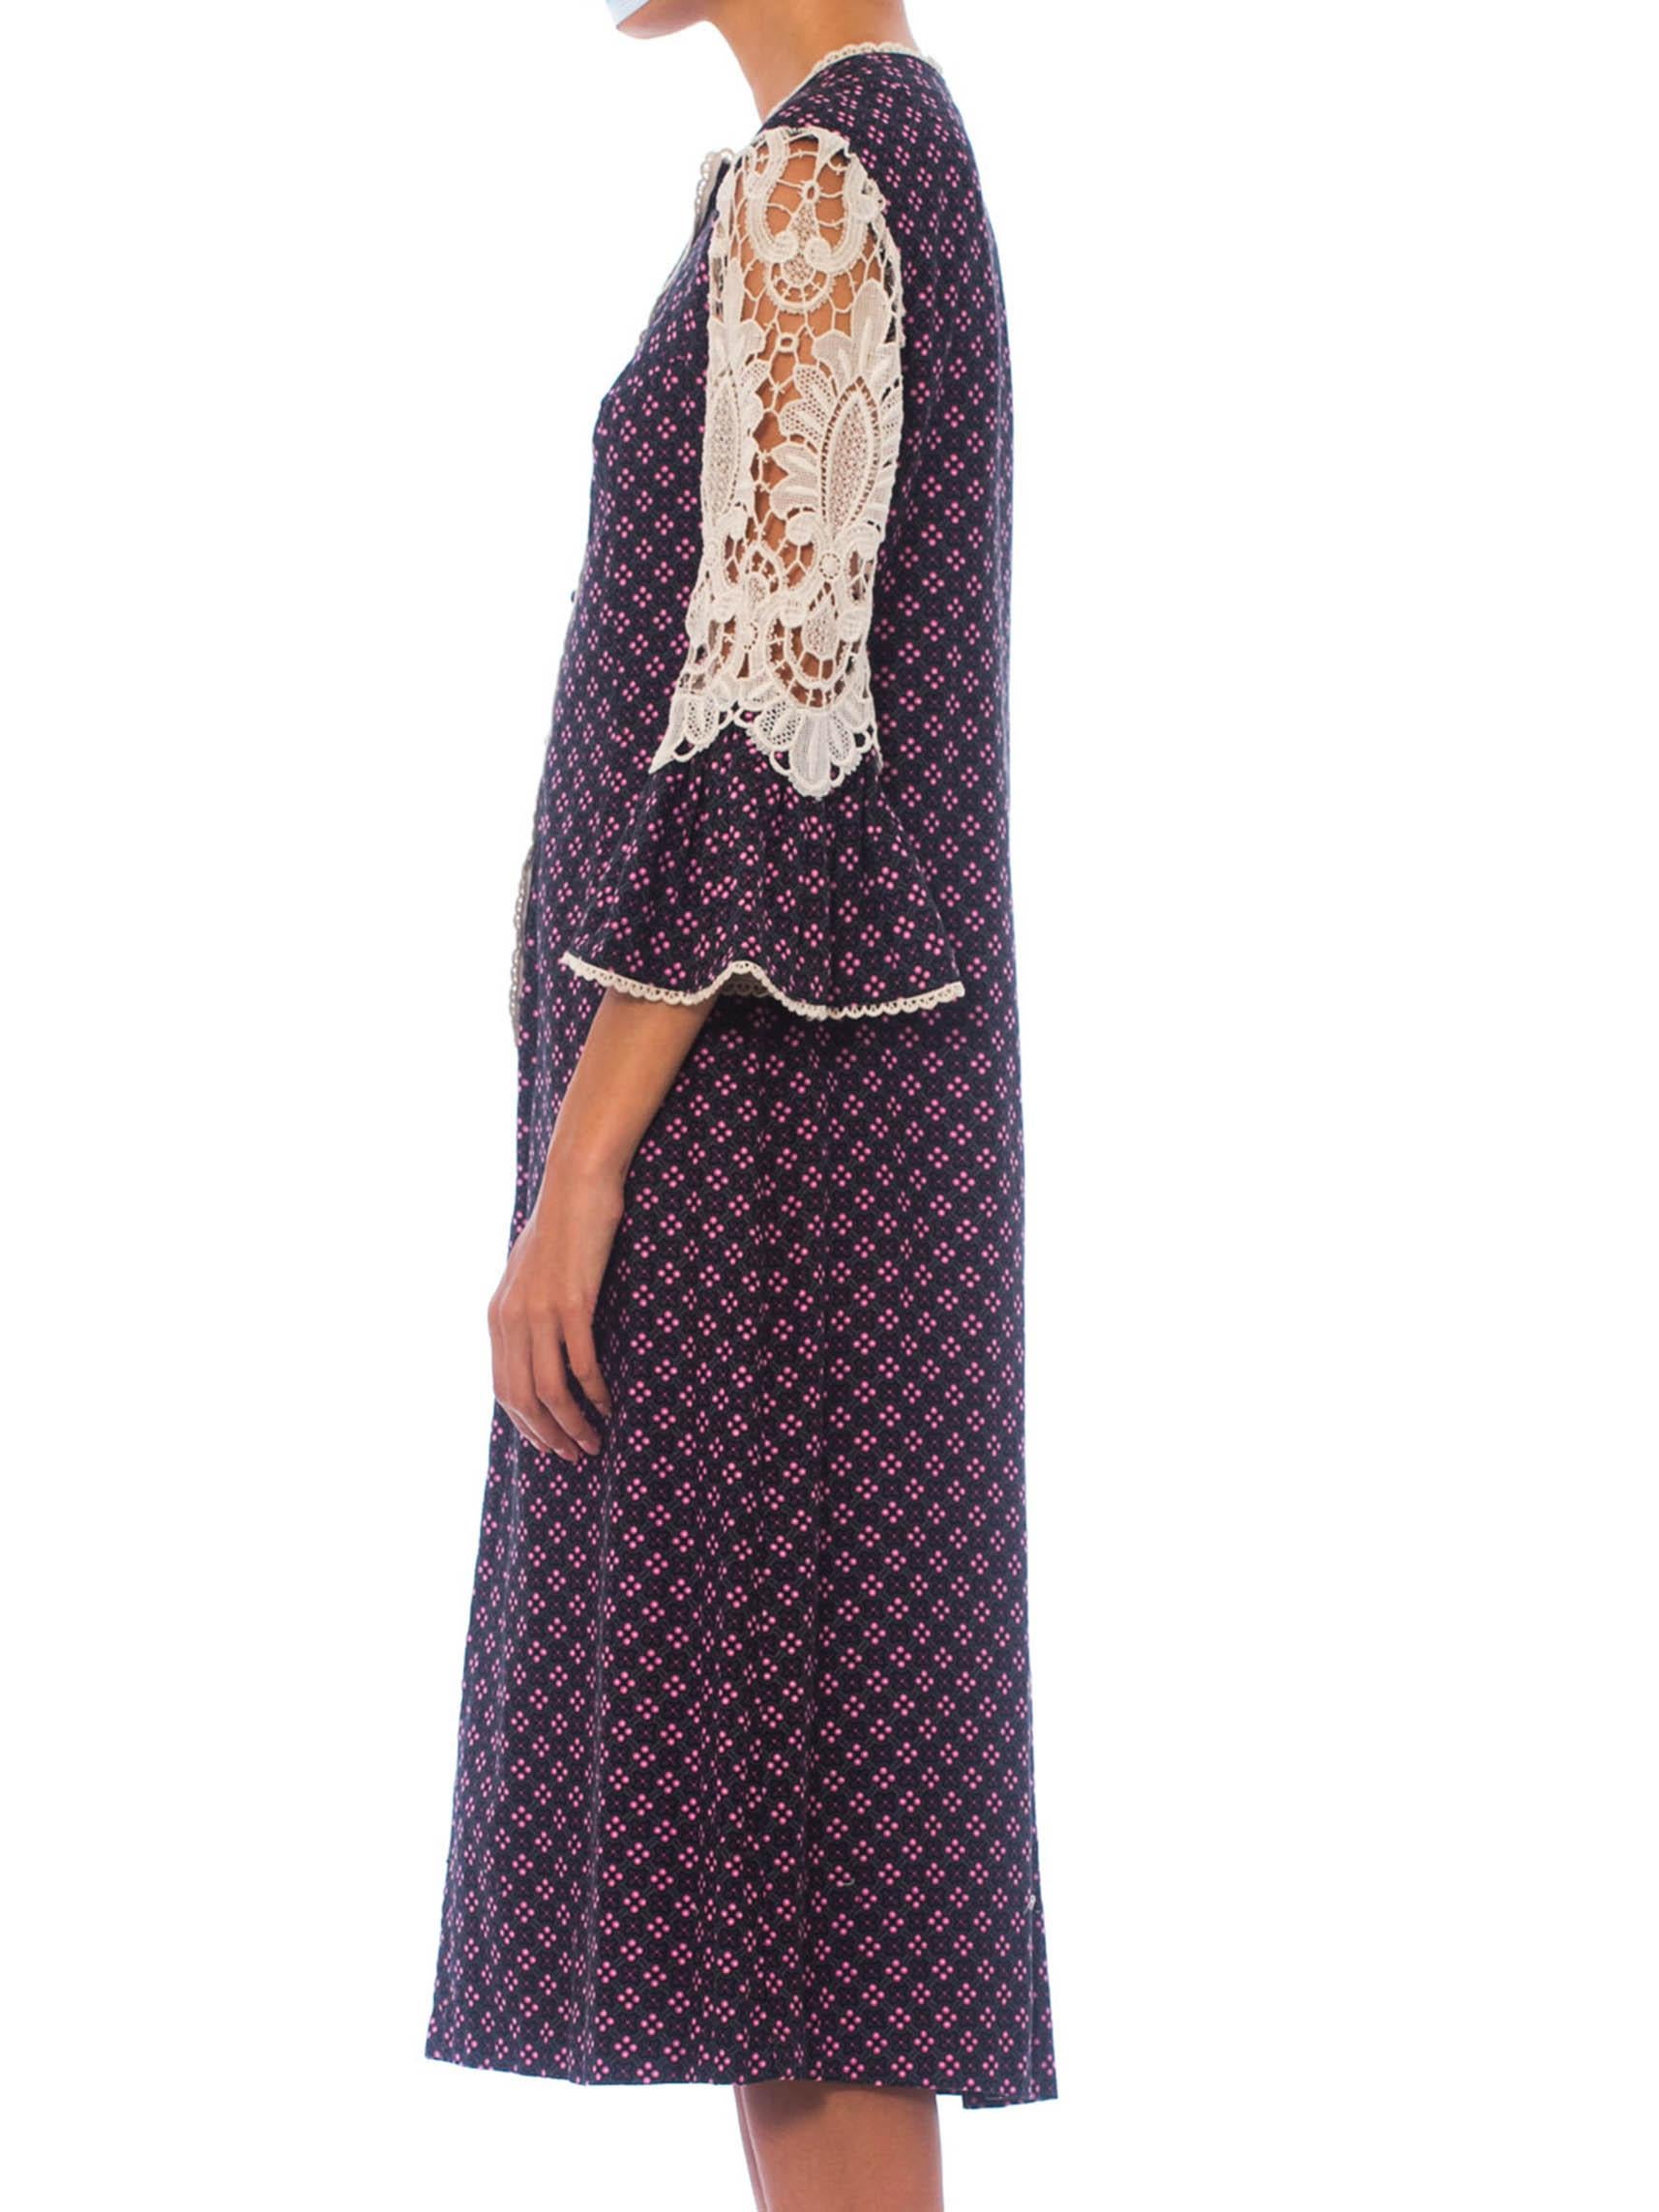 robe victorienne de style Revival en coton sergé imprimé floral des années 1960 avec manches en dentelle blanche